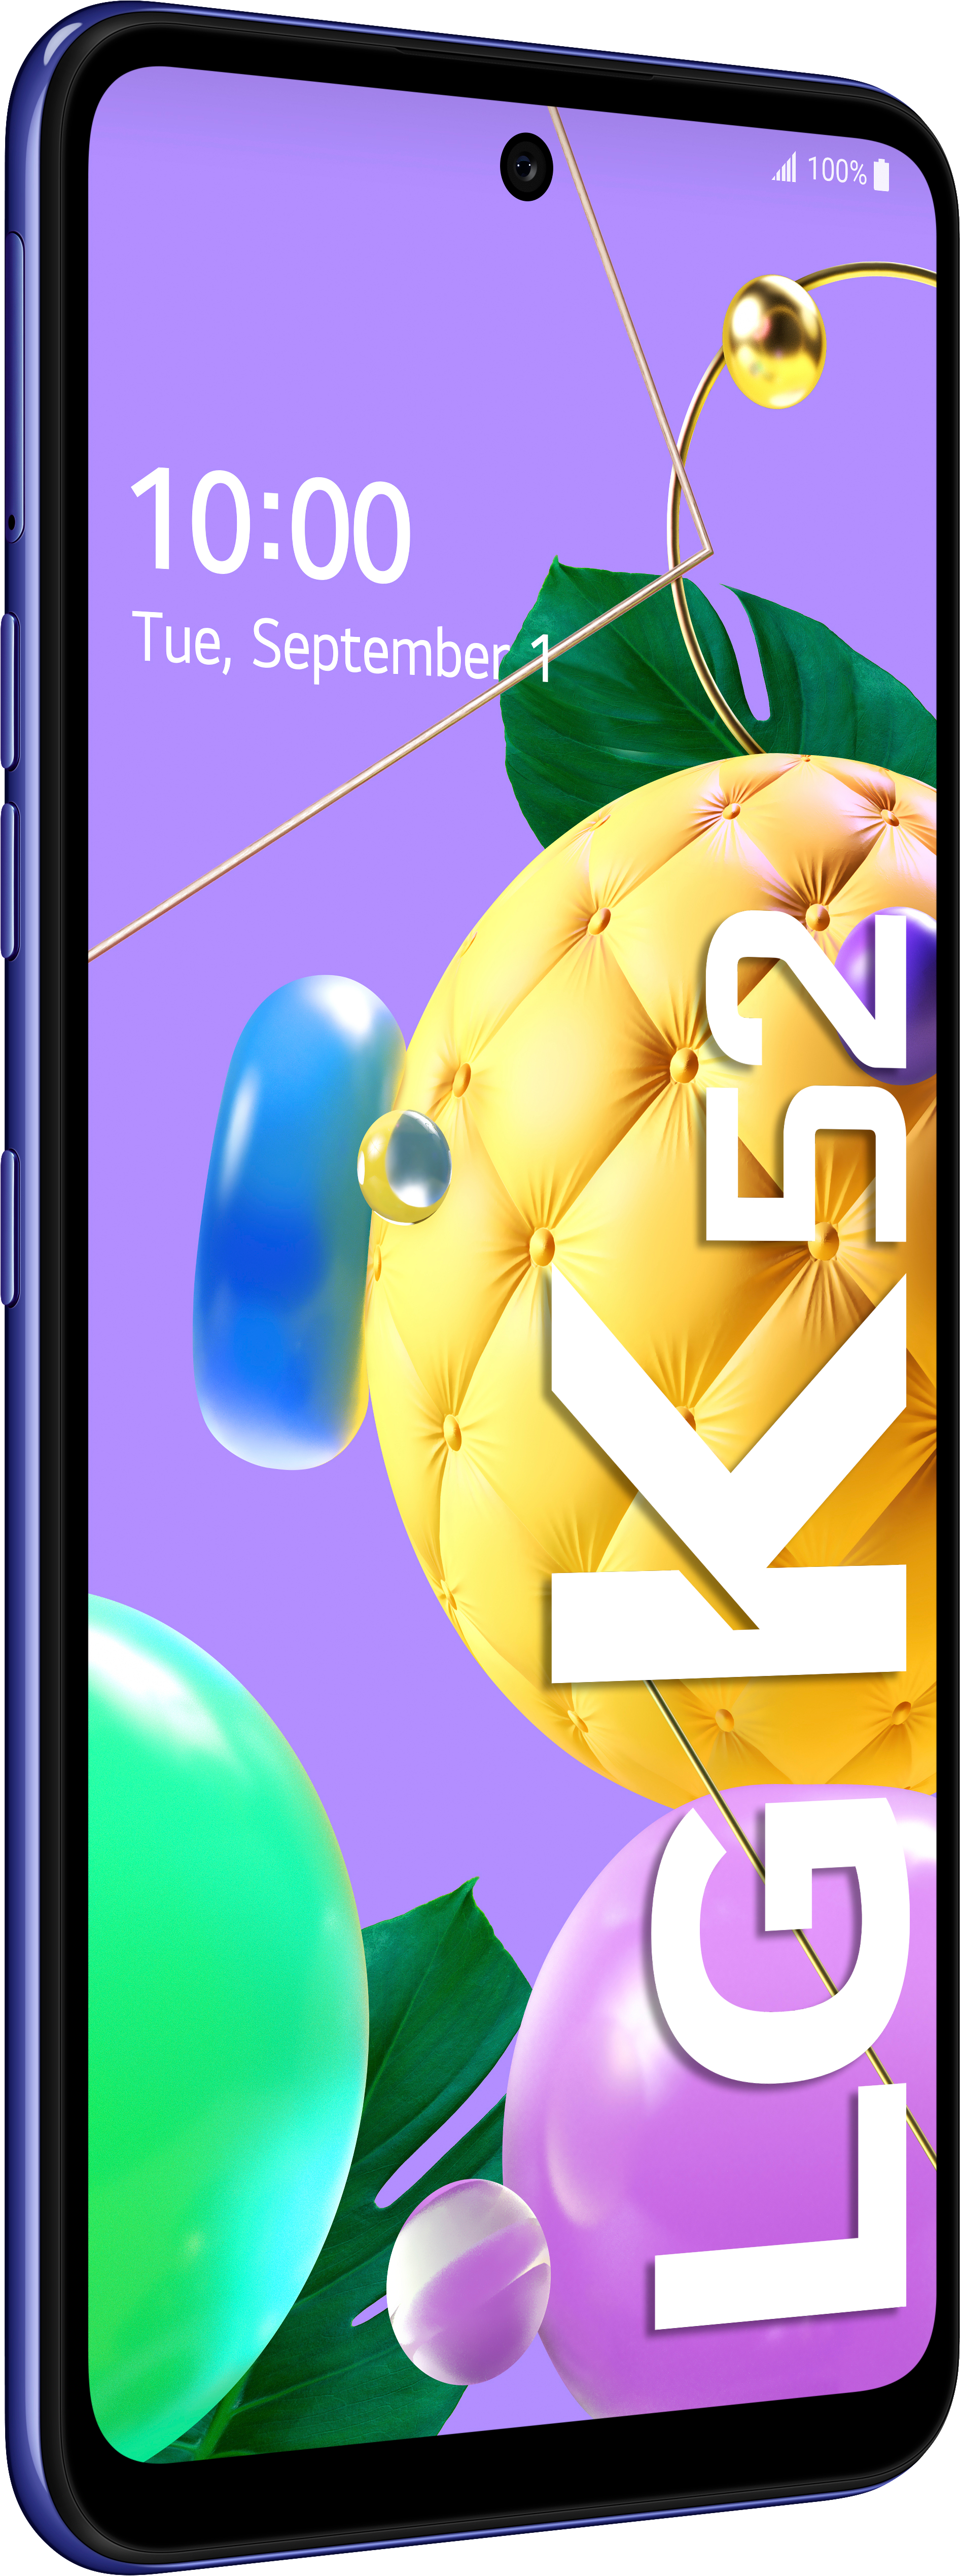 LG K52 Blau Dual GB SIM 64